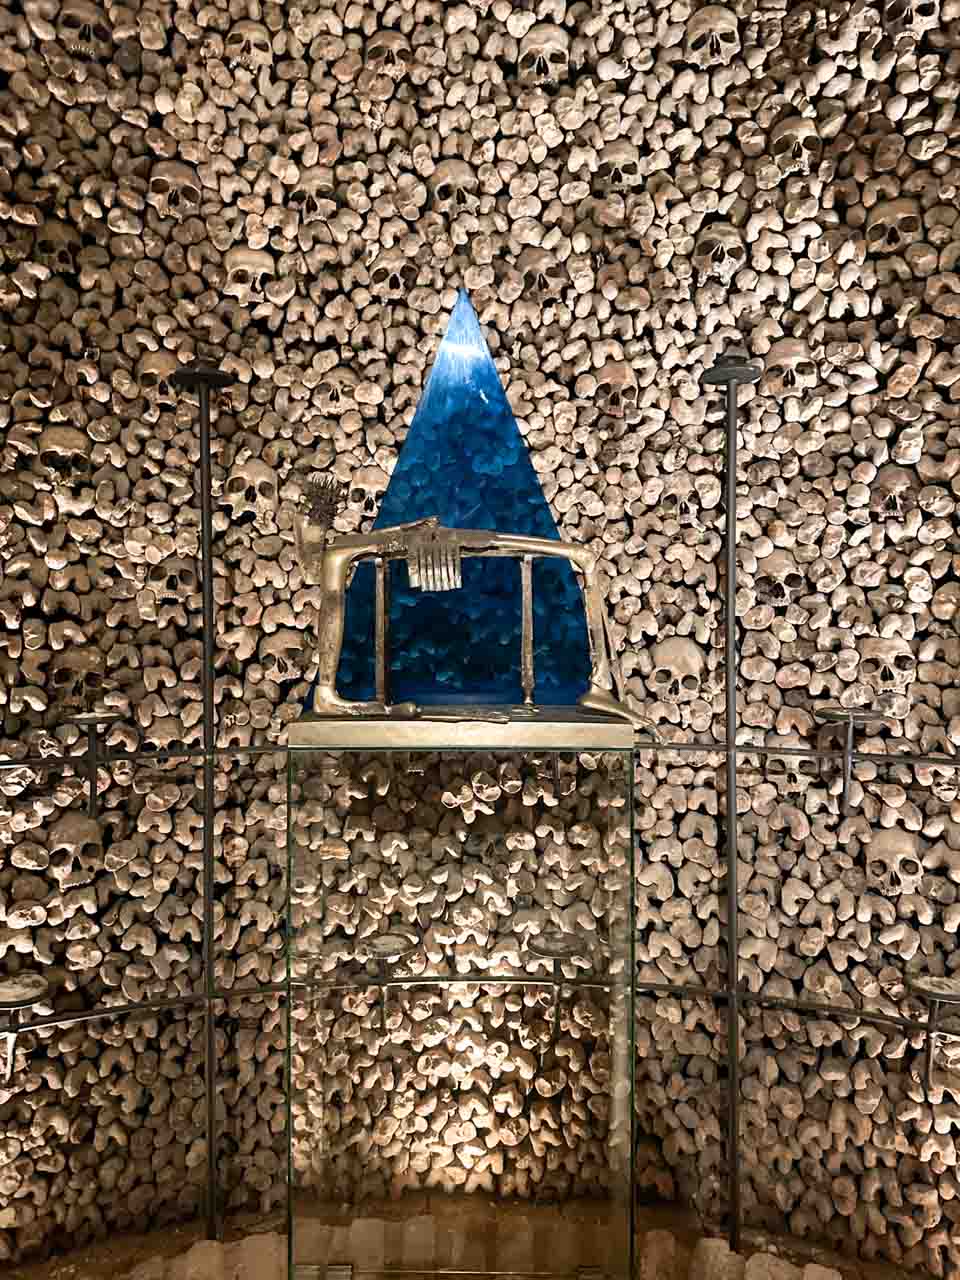 Human bones inside the Brno Ossuary surrounding a blue triangular structure